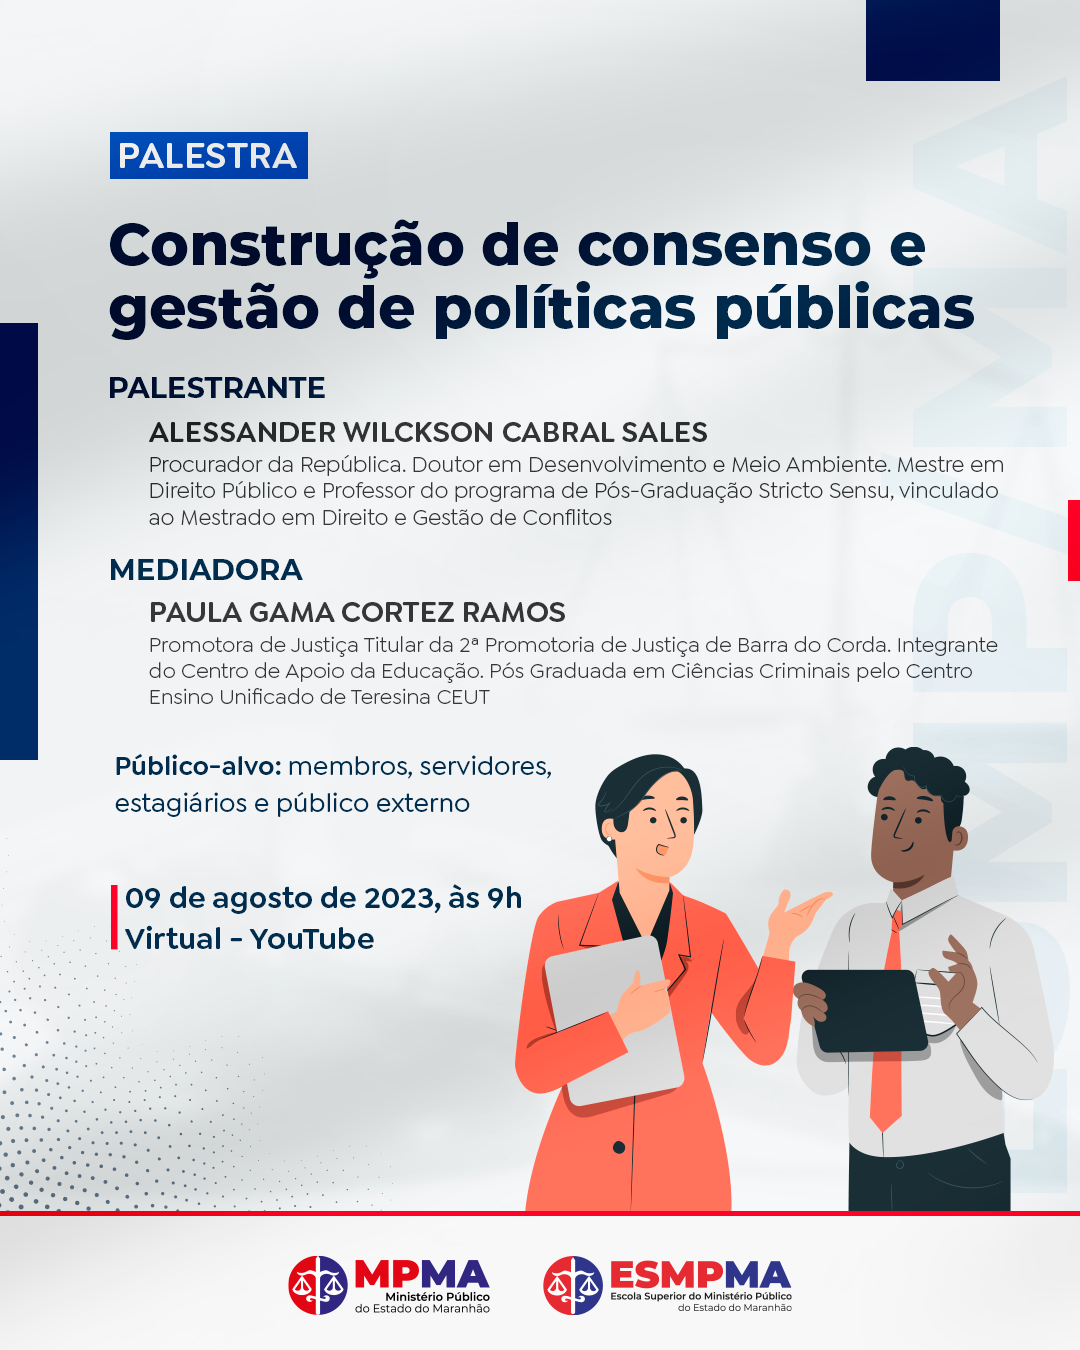 Palestra "Construção de consenso e gestão de políticas públicas"